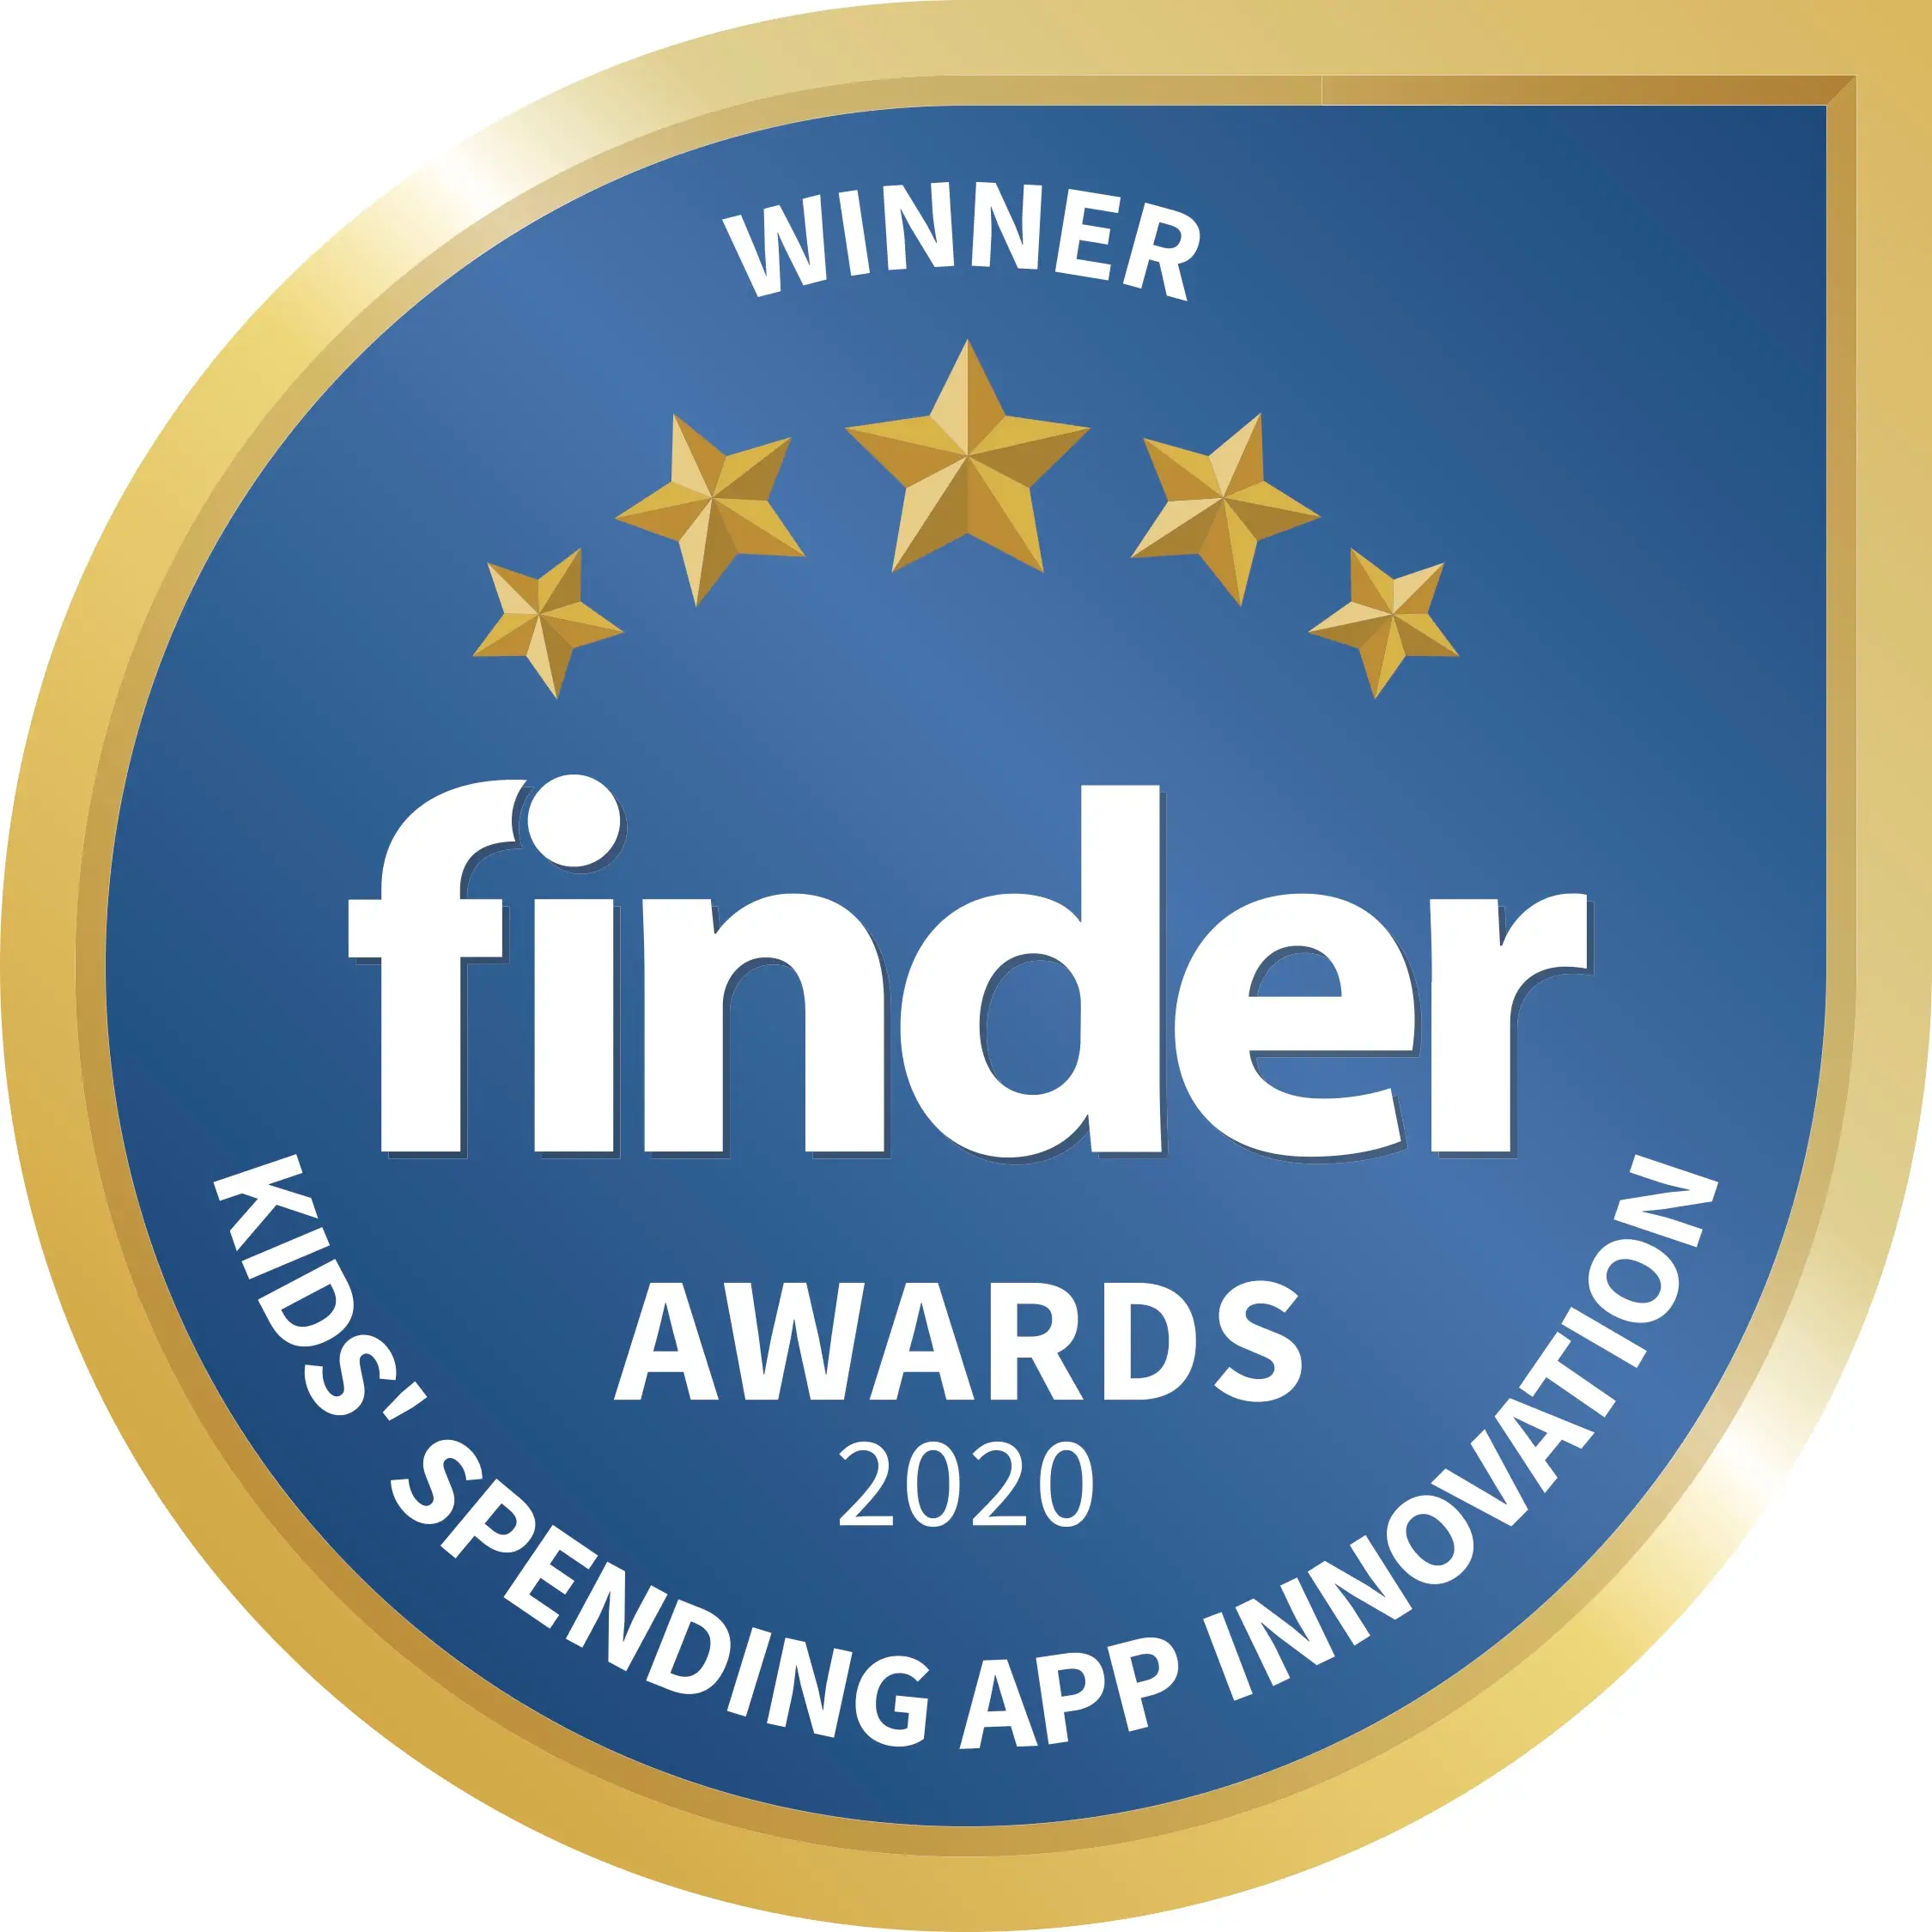 Winner Kids' Spending App Innovation